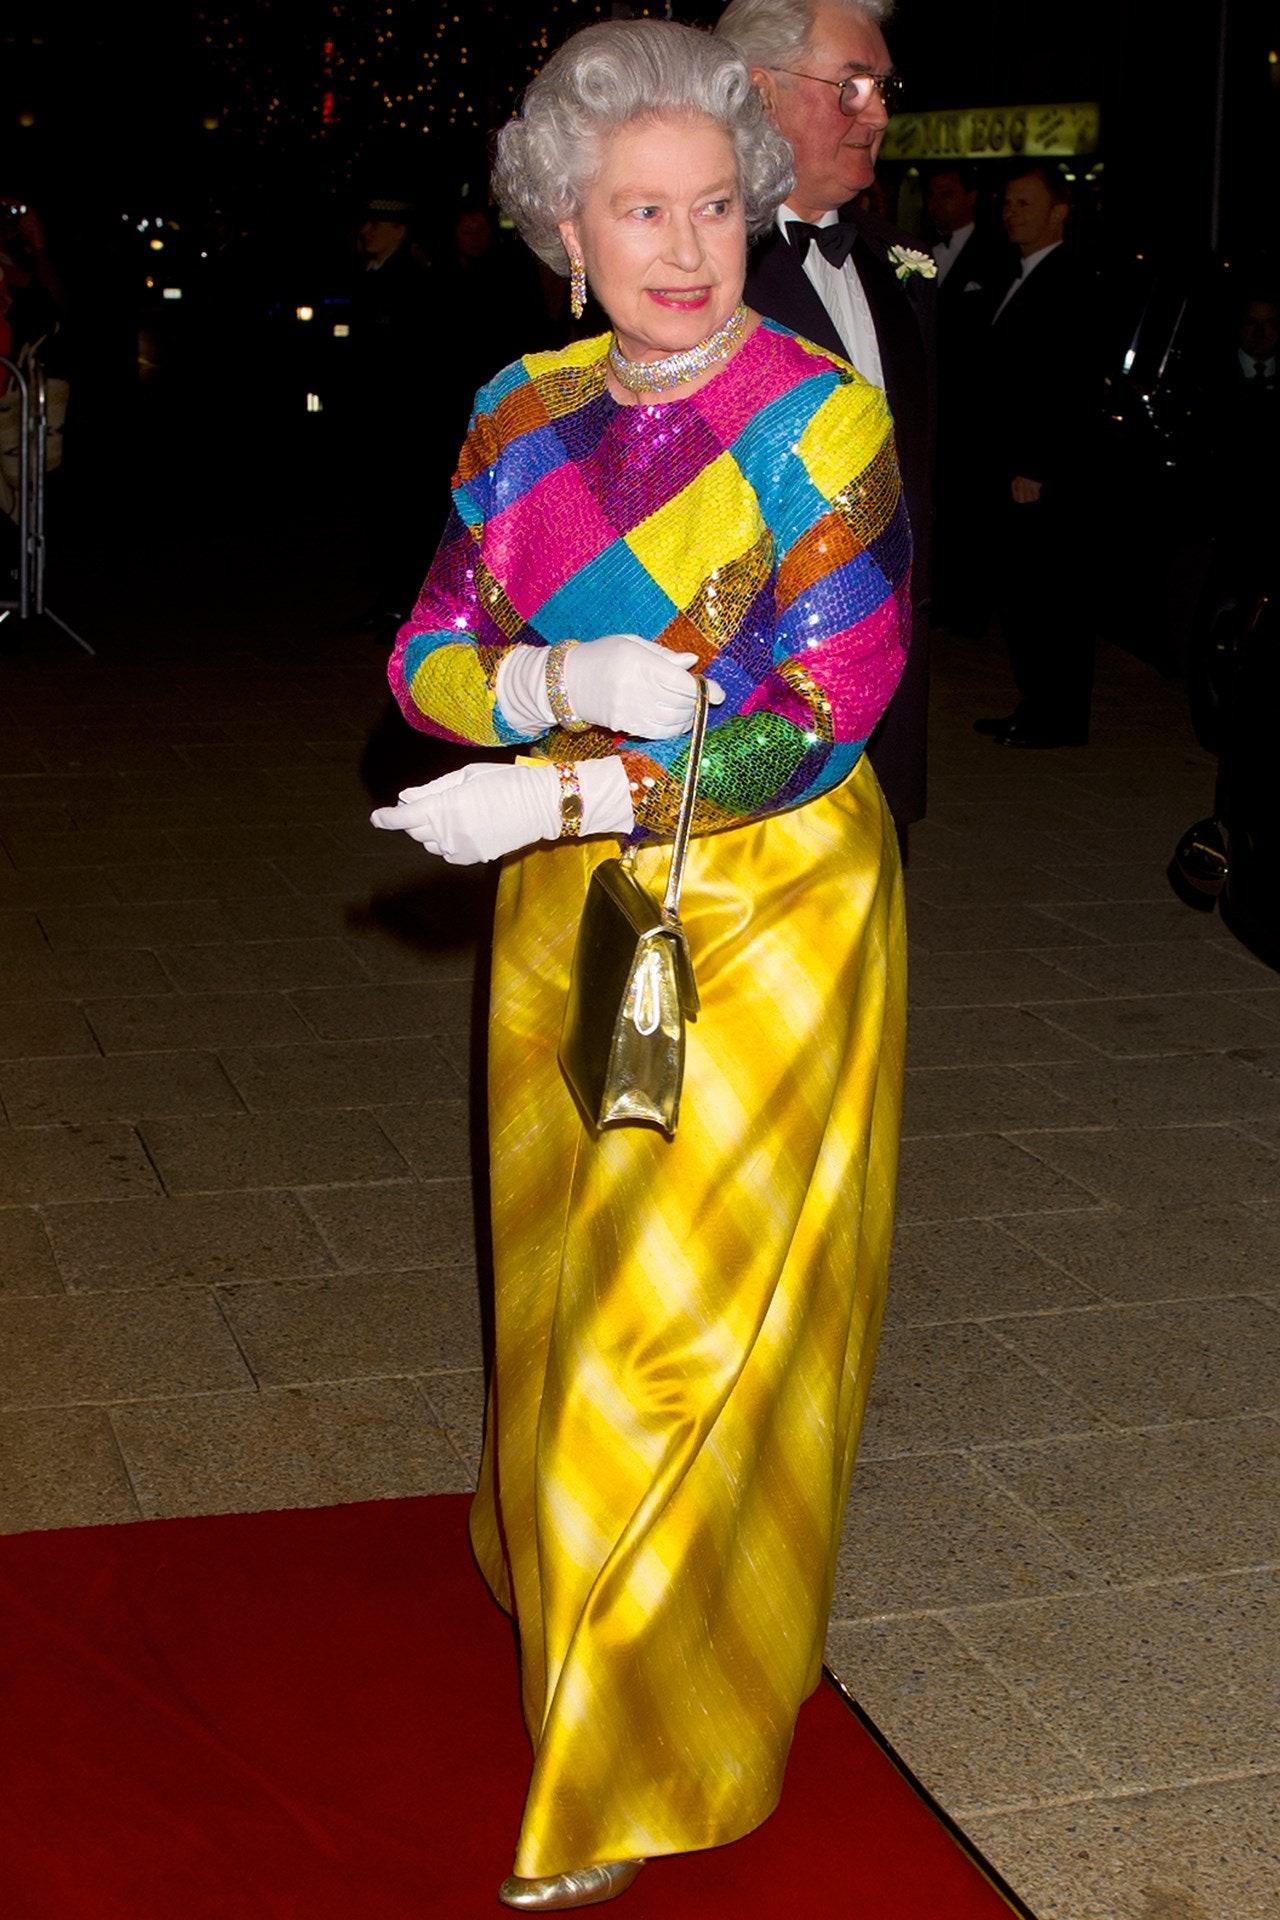 Năm 1999, Nữ hoàng Elizabeth tham dự Buổi biểu diễn đa dạng của Hoàng gia tại Birmingham Hippodrome với chiếc áo dài đính sequin sặc sỡ và váy vàng sọc.